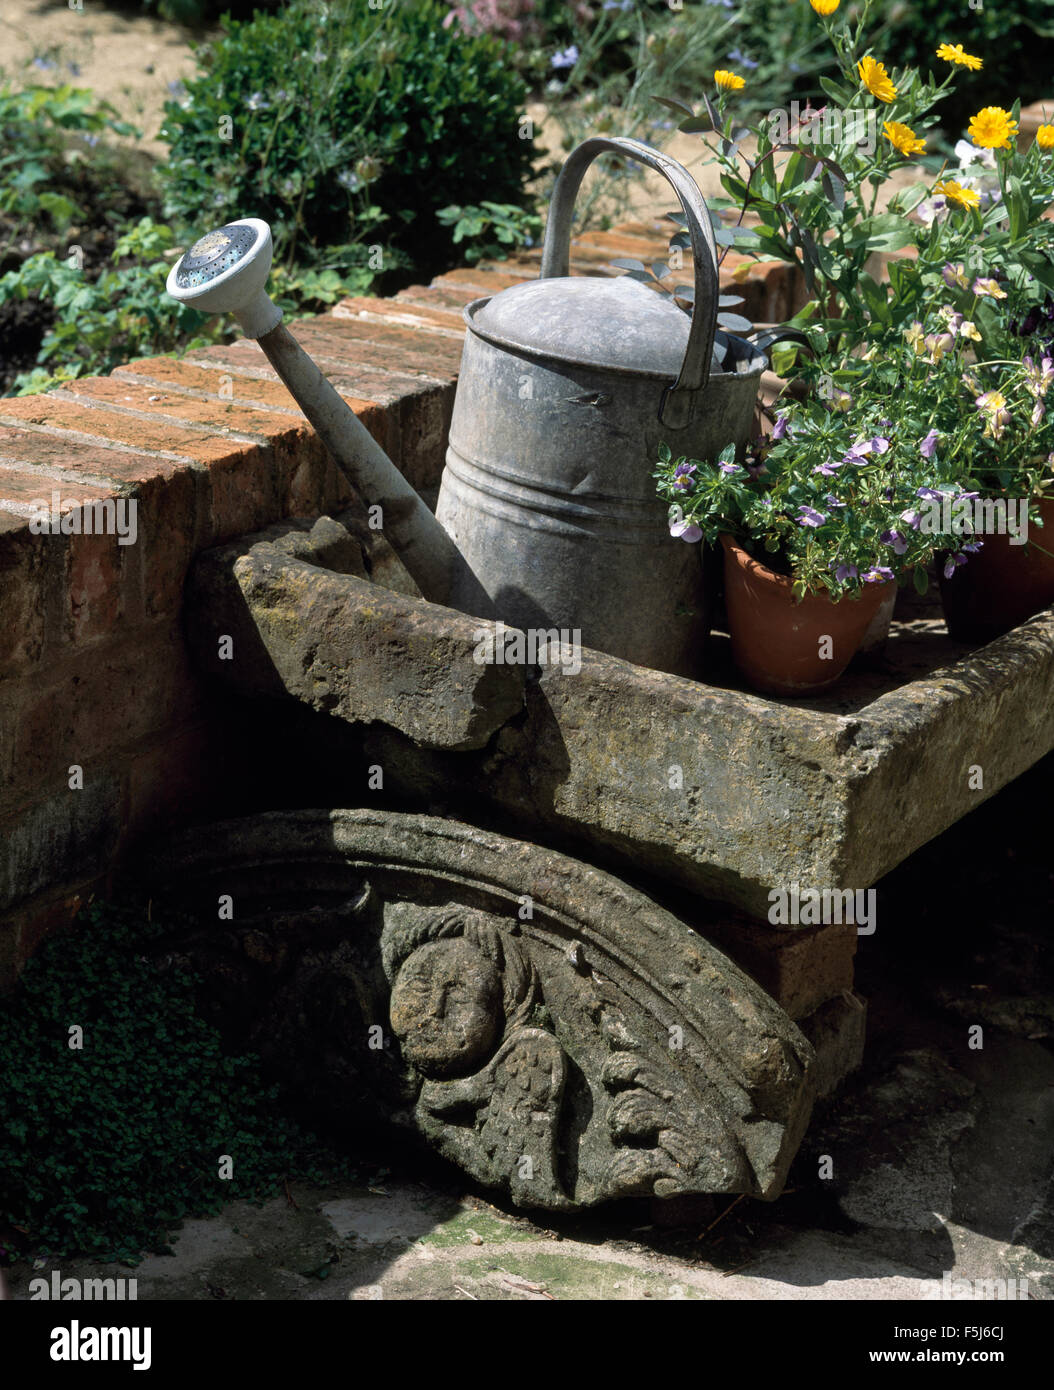 Small Vintage Zinc Jug Decorative Garden Watering Can Set of 2 Black